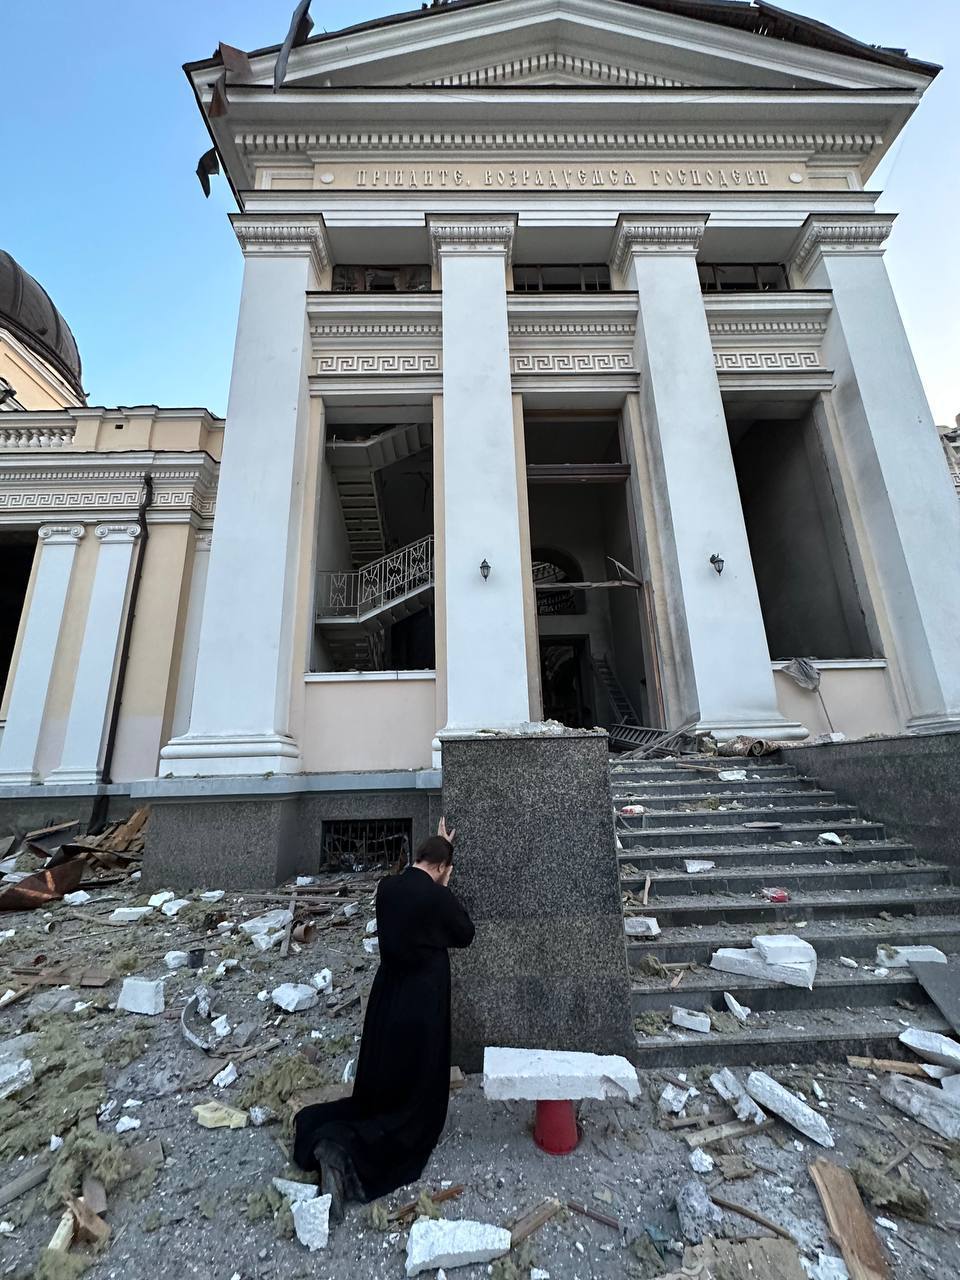 Пресс-служба Одесской епархии опубликовала утренние снимки разрушений собора